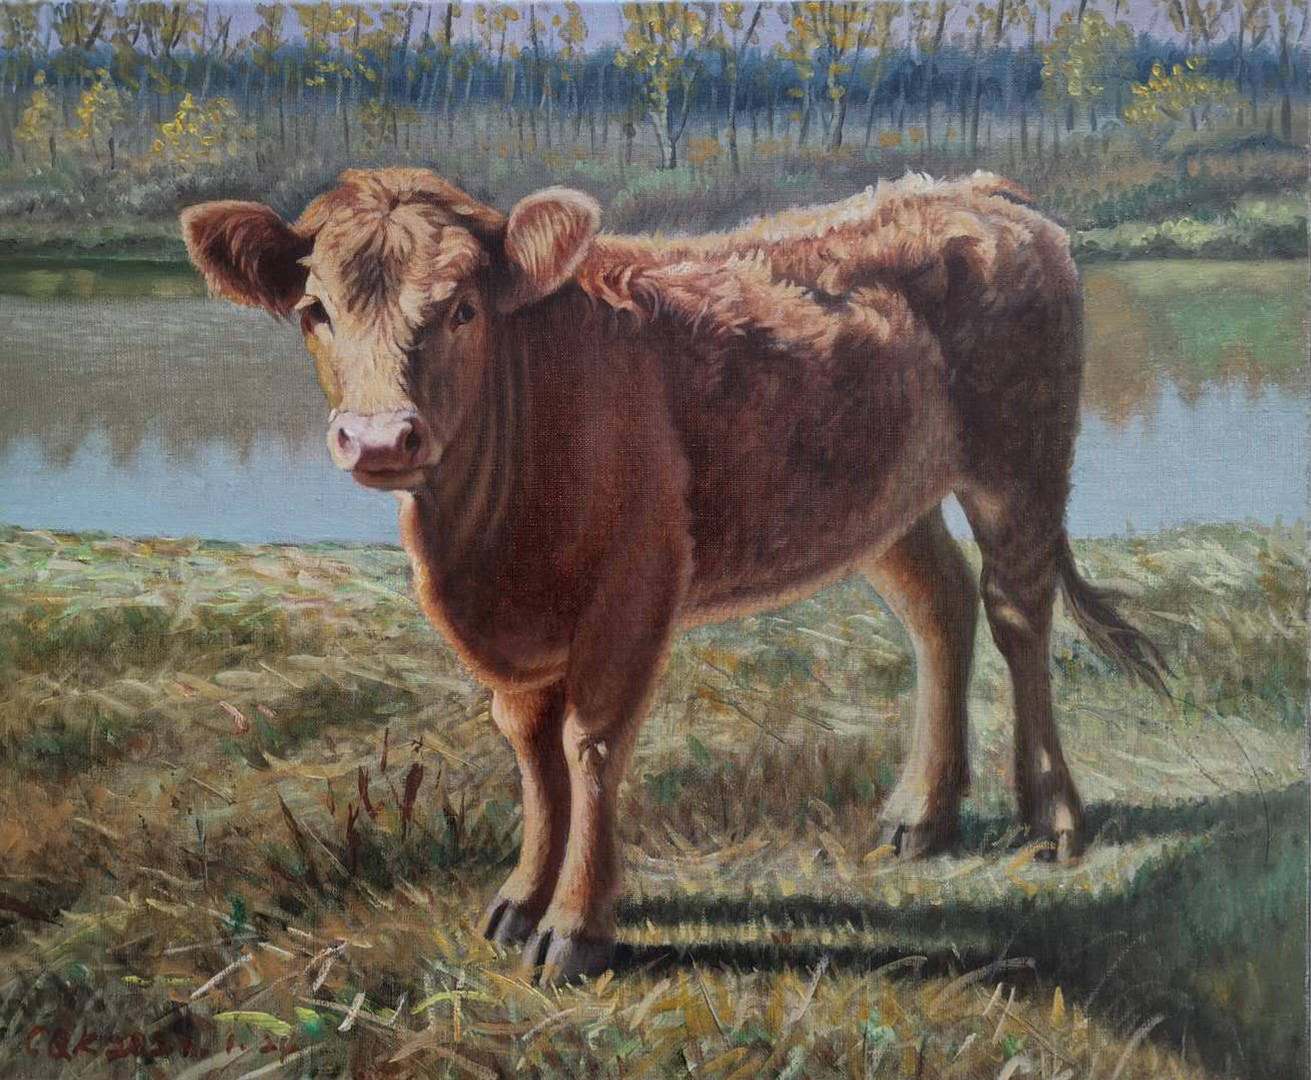 02《老水牛》布面油画50×60cm作于2020年03《小牦牛》布面油画40